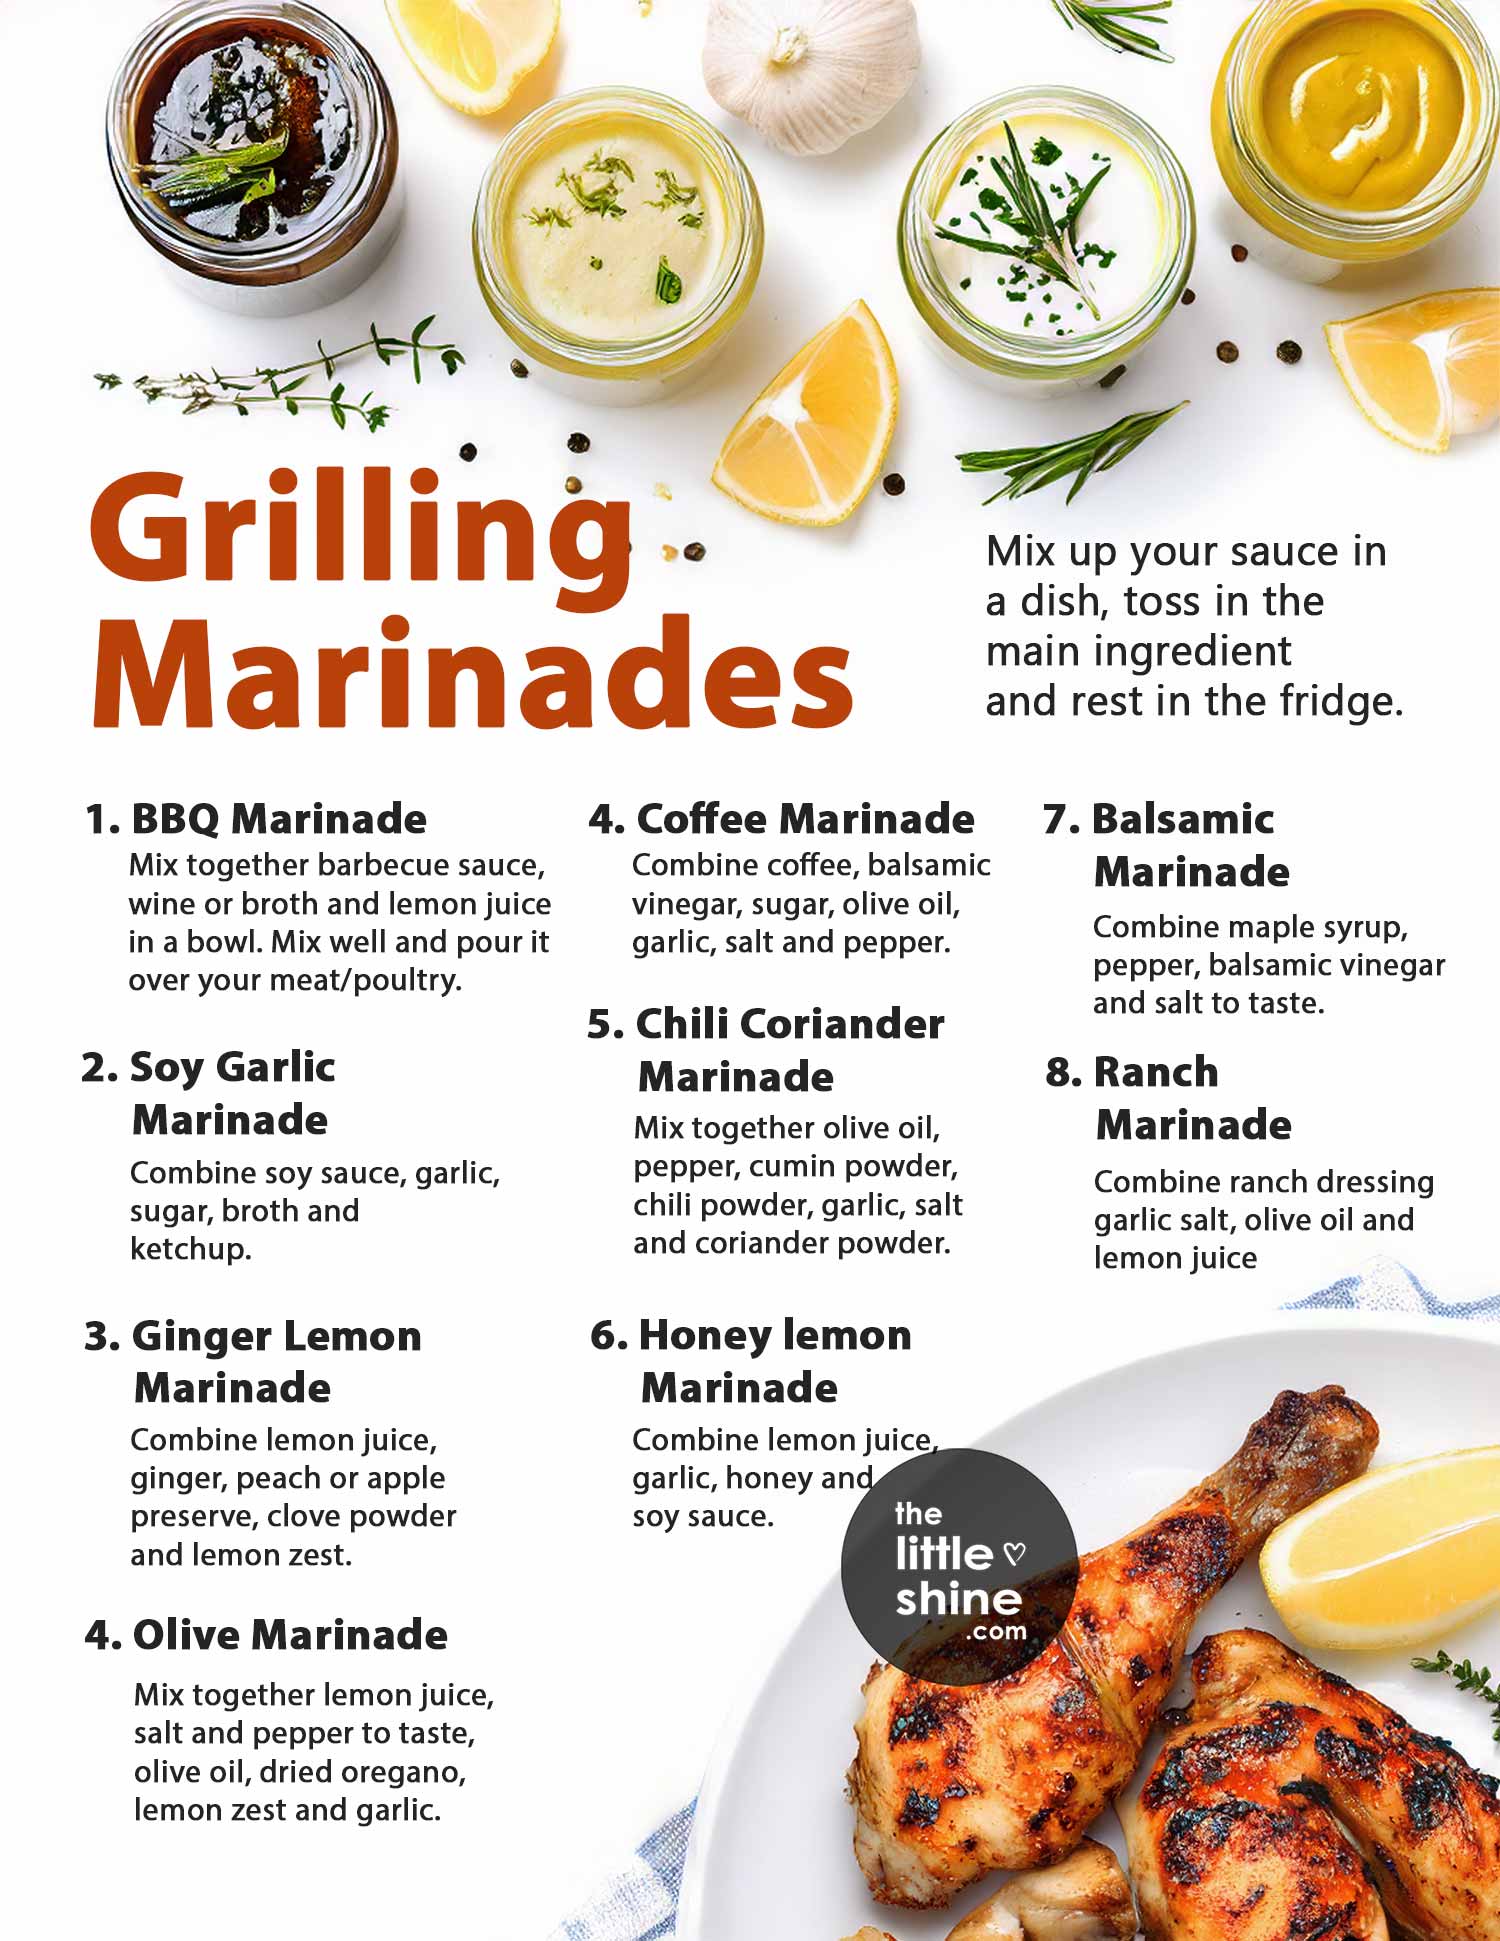 10 Grilling Marinades